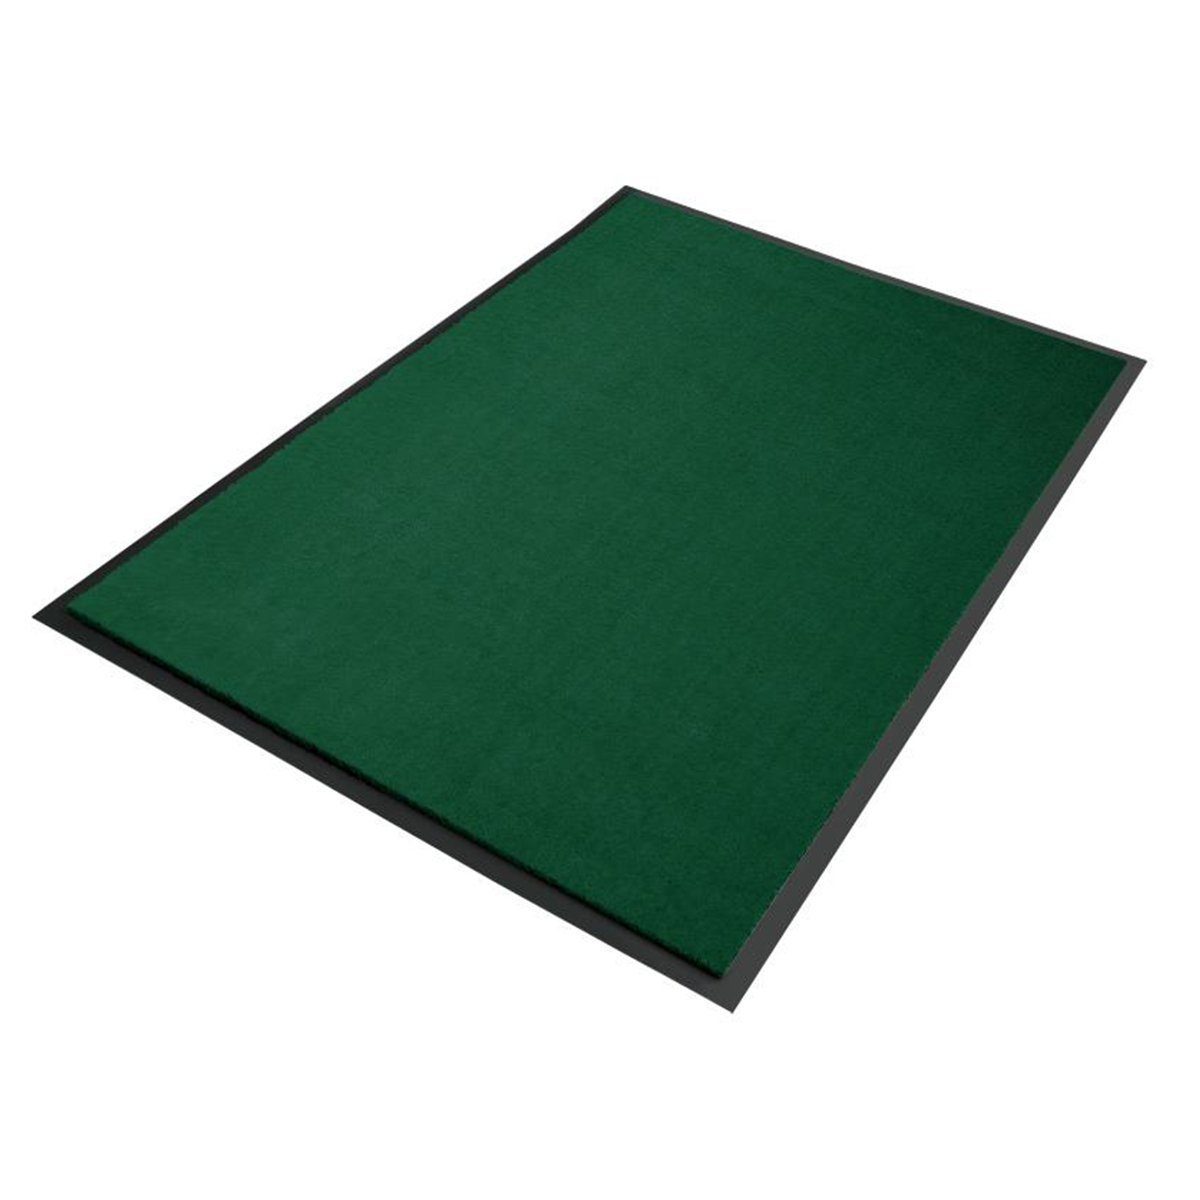 Fußmatte Premium-Schmutzfangmatte B18 Dunkelgrün, Erhältlich in vielen Größen, Floordirekt, Höhe: 6 mm